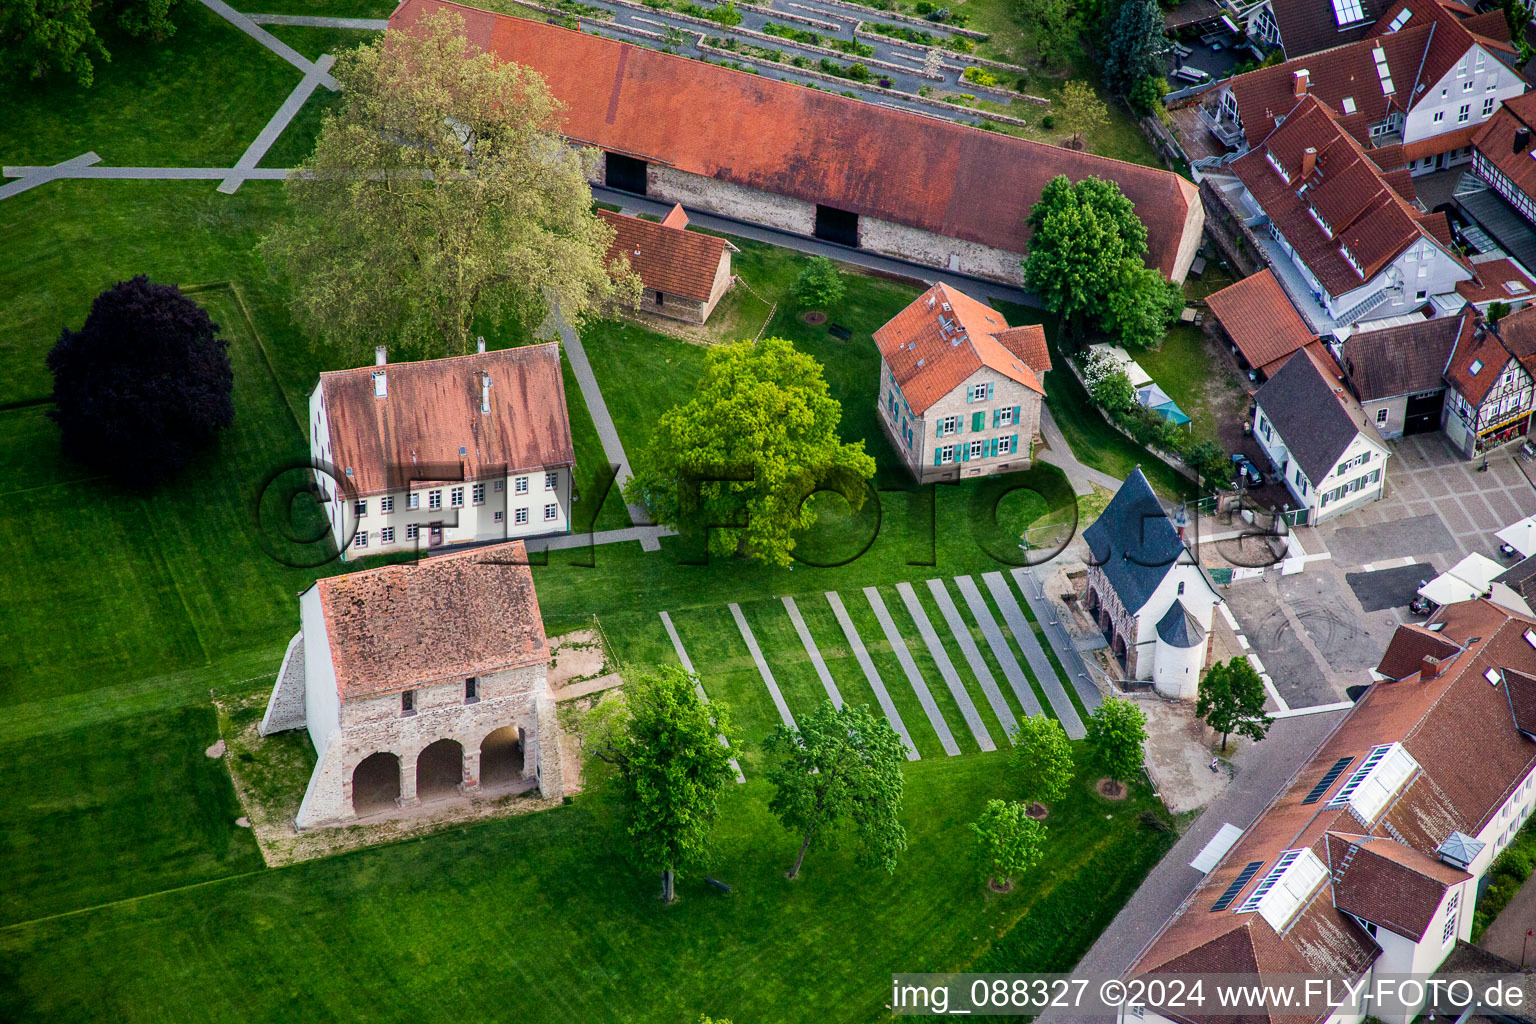 Luftbild von Gebäudekomplex des ehemaligen Klosters und heutigen Museums Klosteranlage Lorsch in Lorsch im Bundesland Hessen, Deutschland